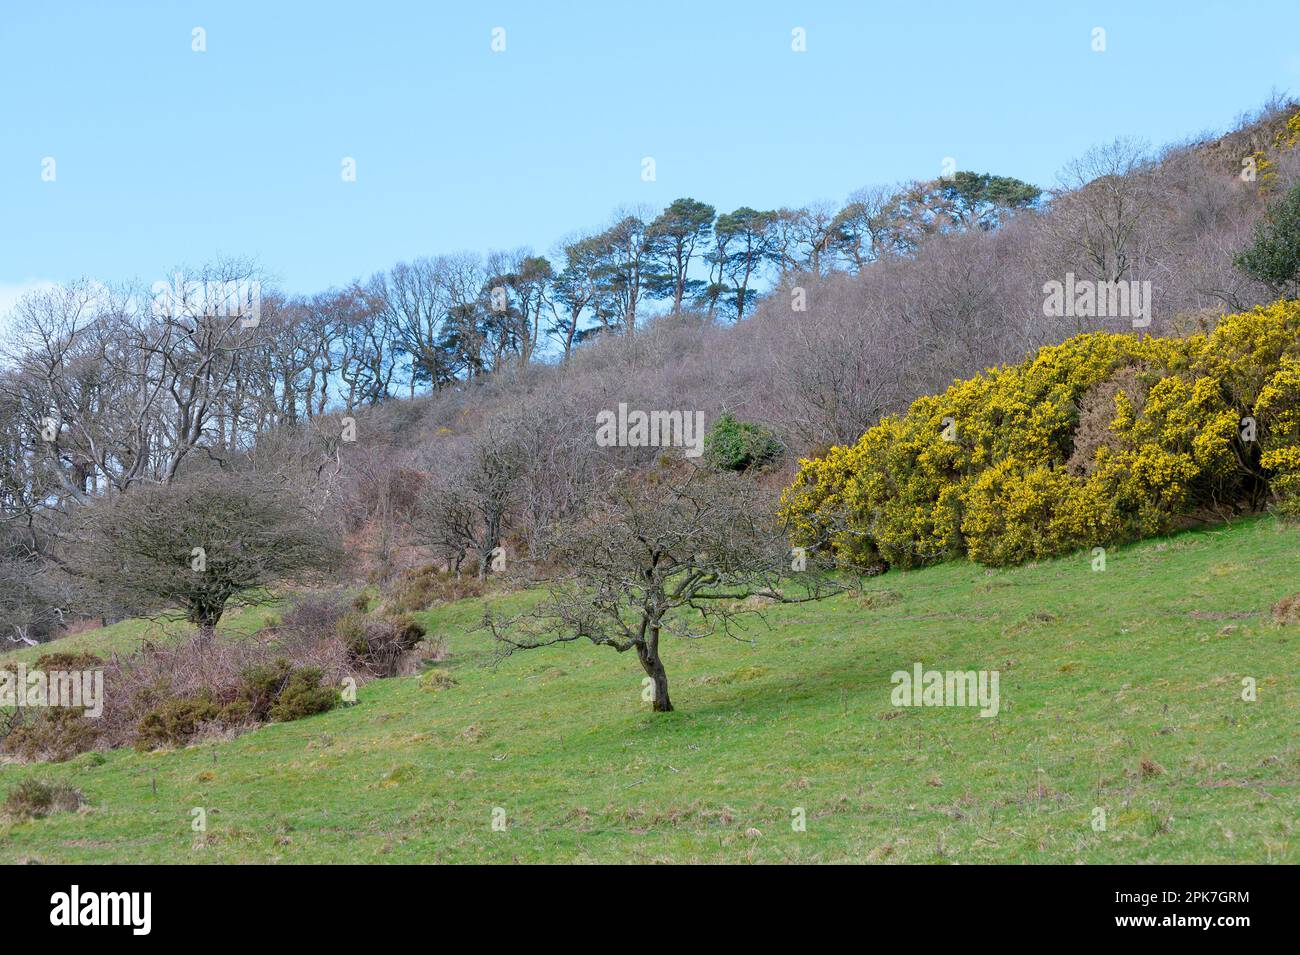 Paysage typique de Lake District Northern Lake District près de Bassenthwaite, Cumbria, Royaume-Uni Banque D'Images